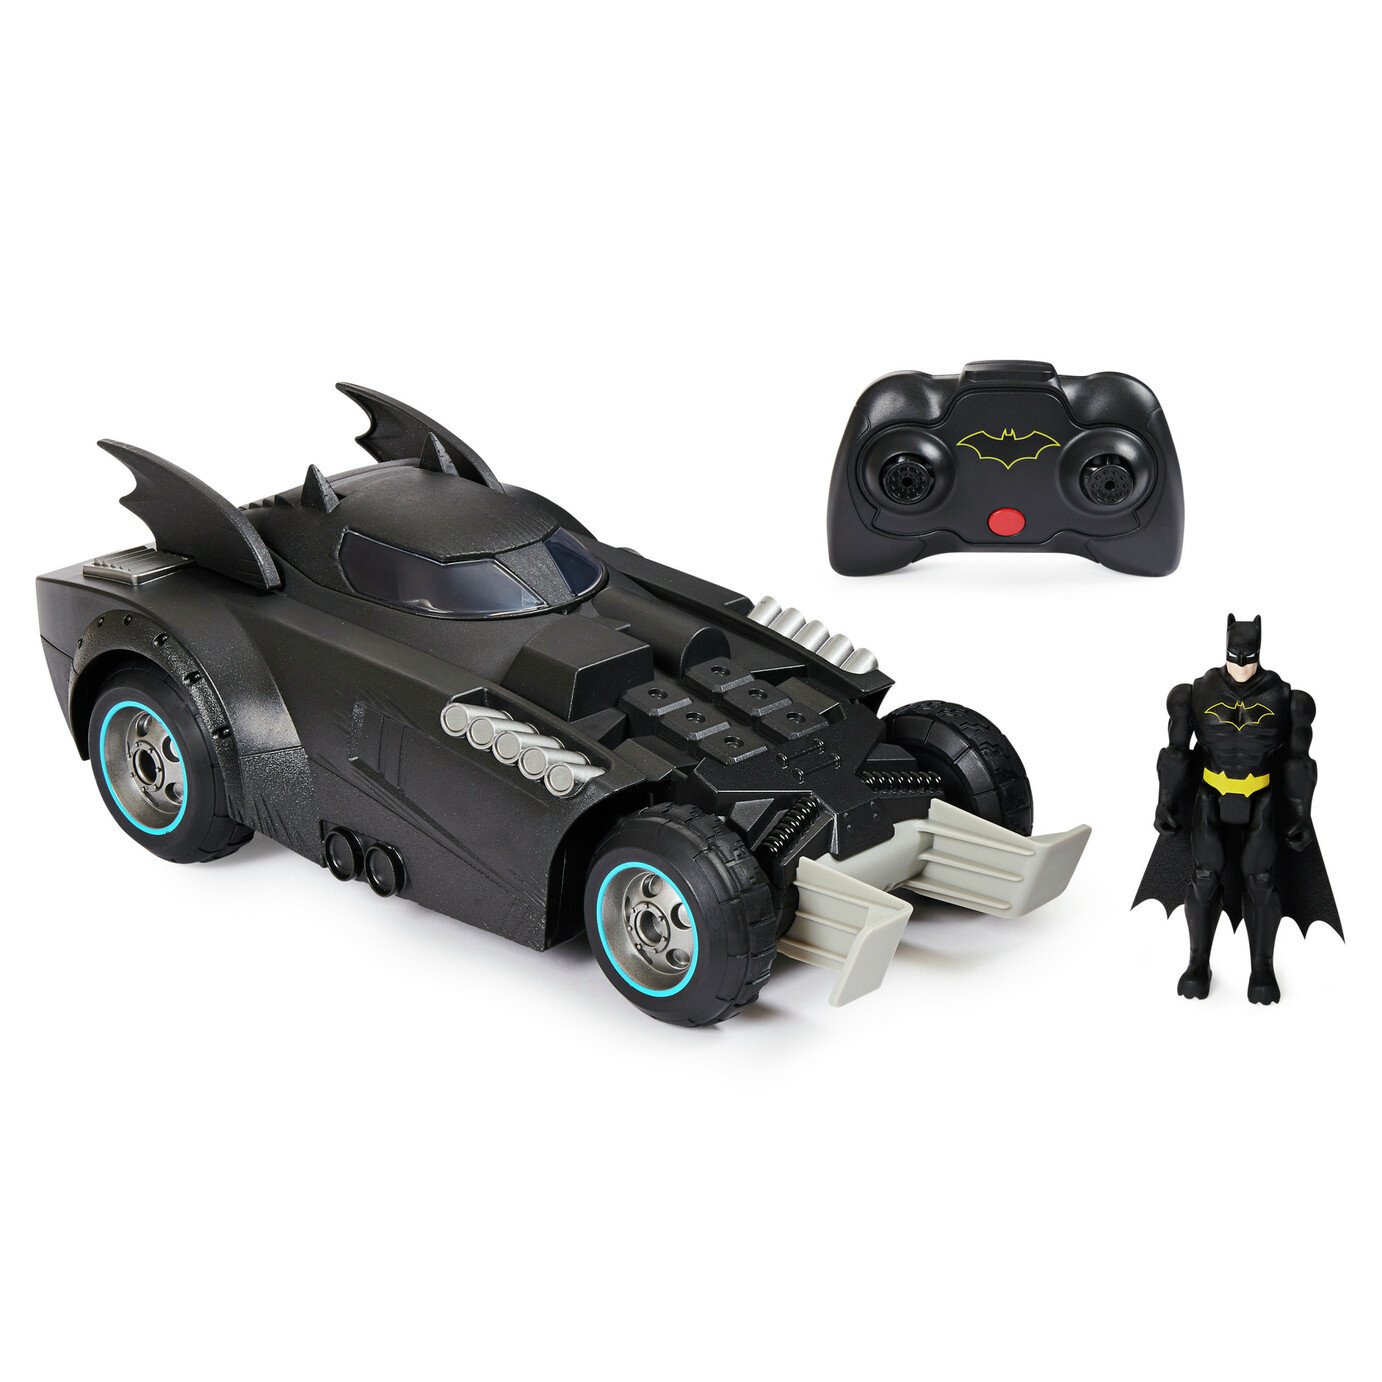 DC Batman RC Launch & Defend Batmobile Review